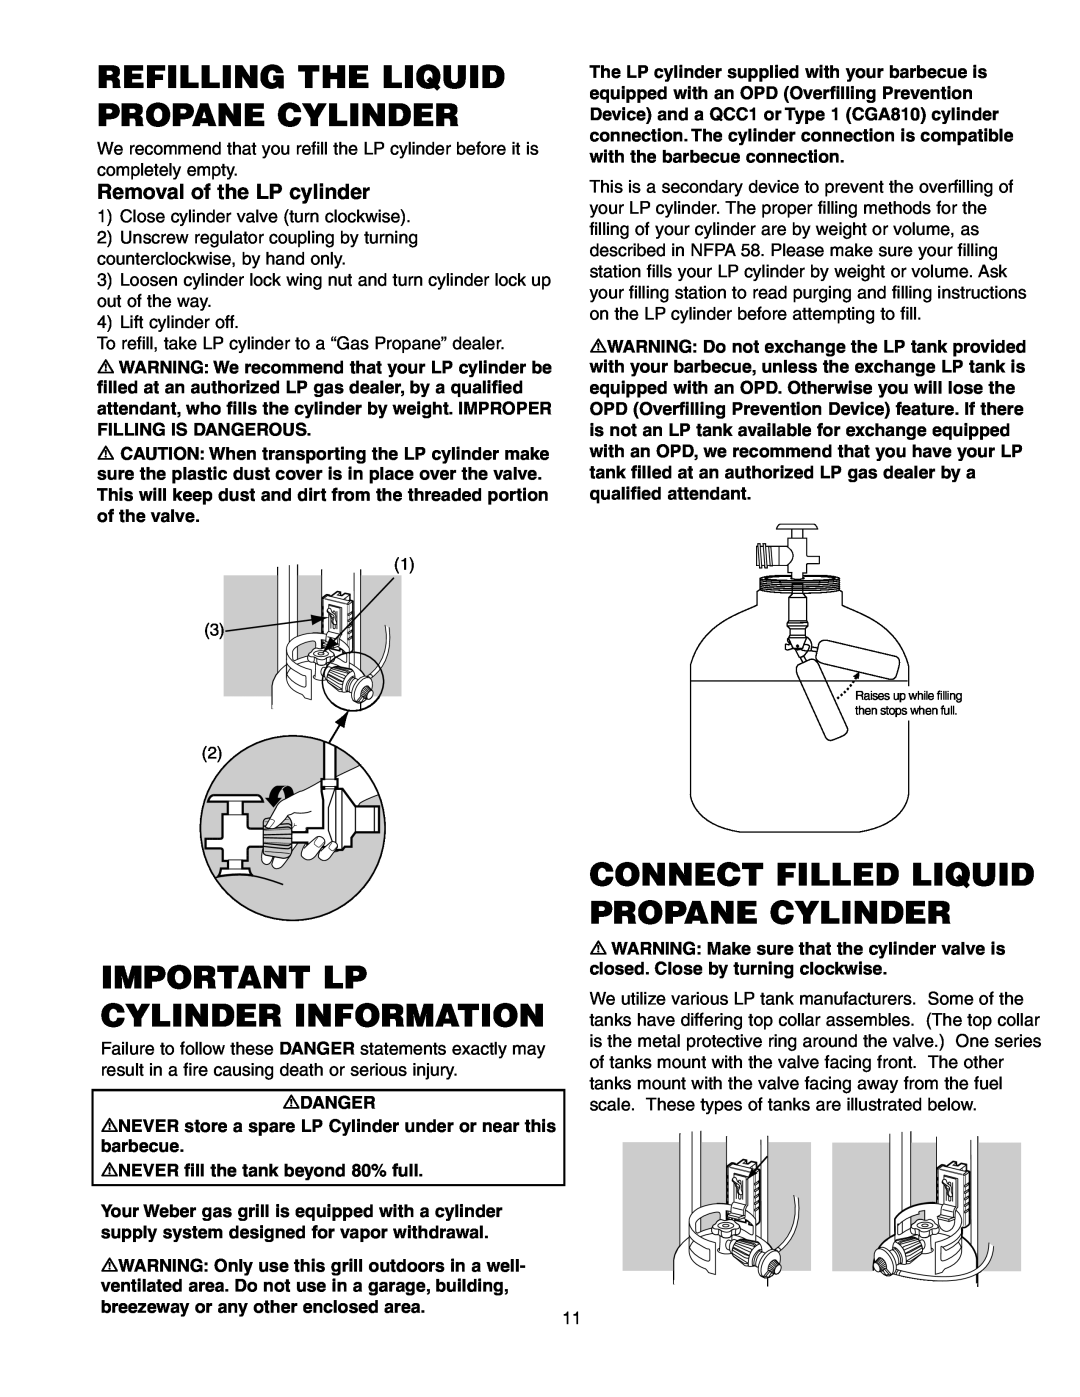 Weber 650 Refilling The Liquid Propane Cylinder, Connect Filled Liquid Propane Cylinder, Important Lp Cylinder Information 